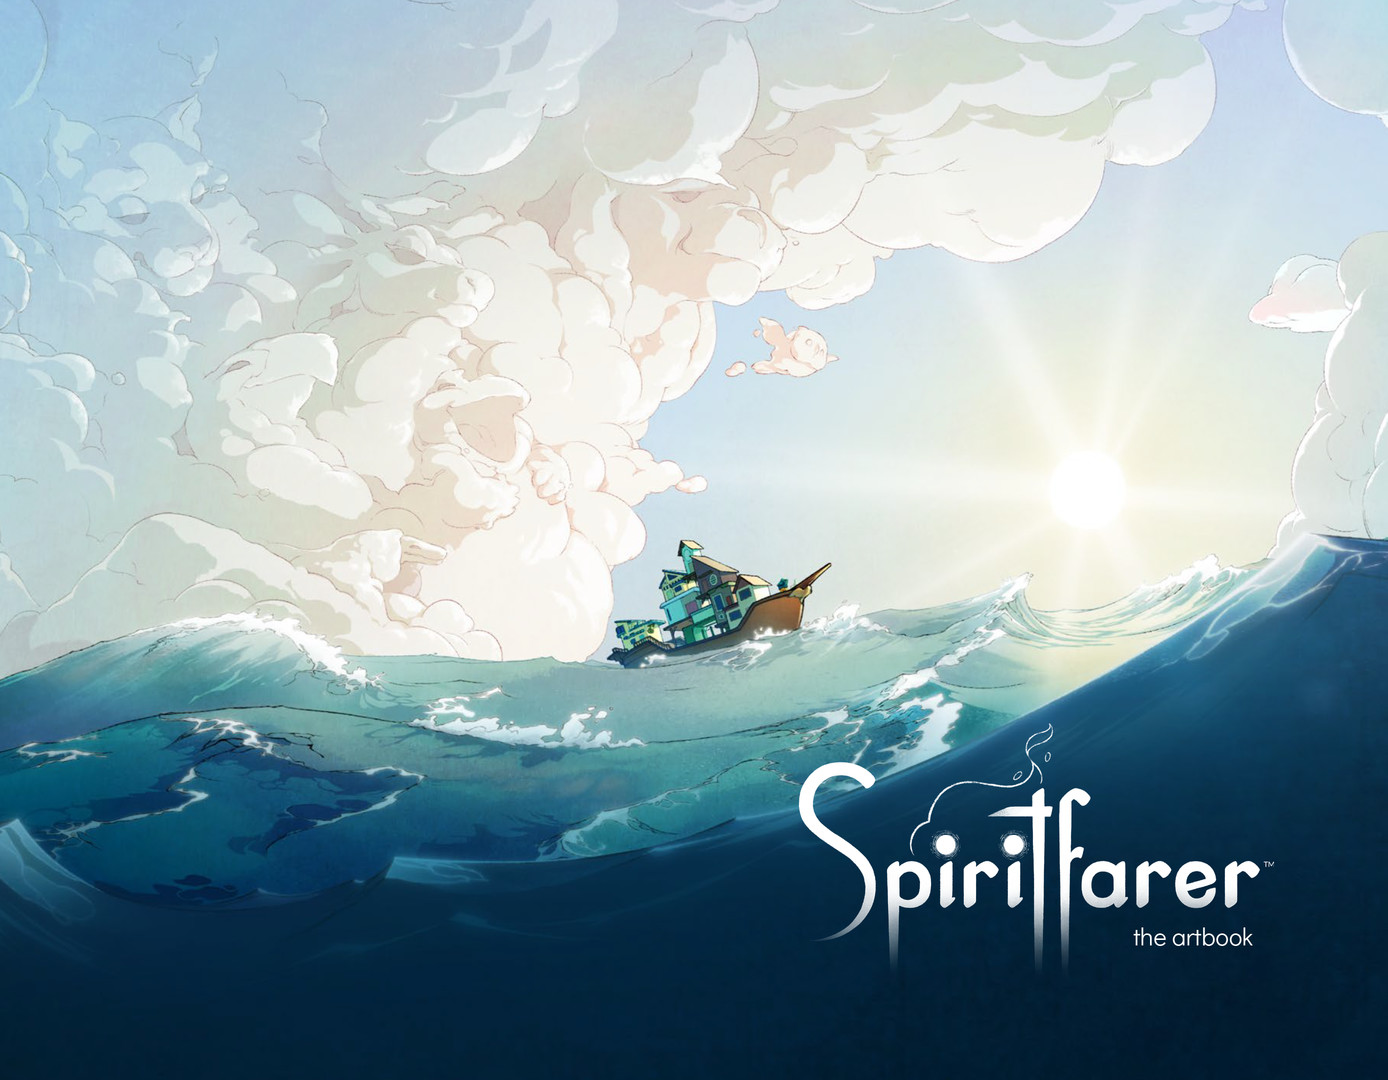 Spiritfarer®: Farewell Edition - Digital Artbook Featured Screenshot #1